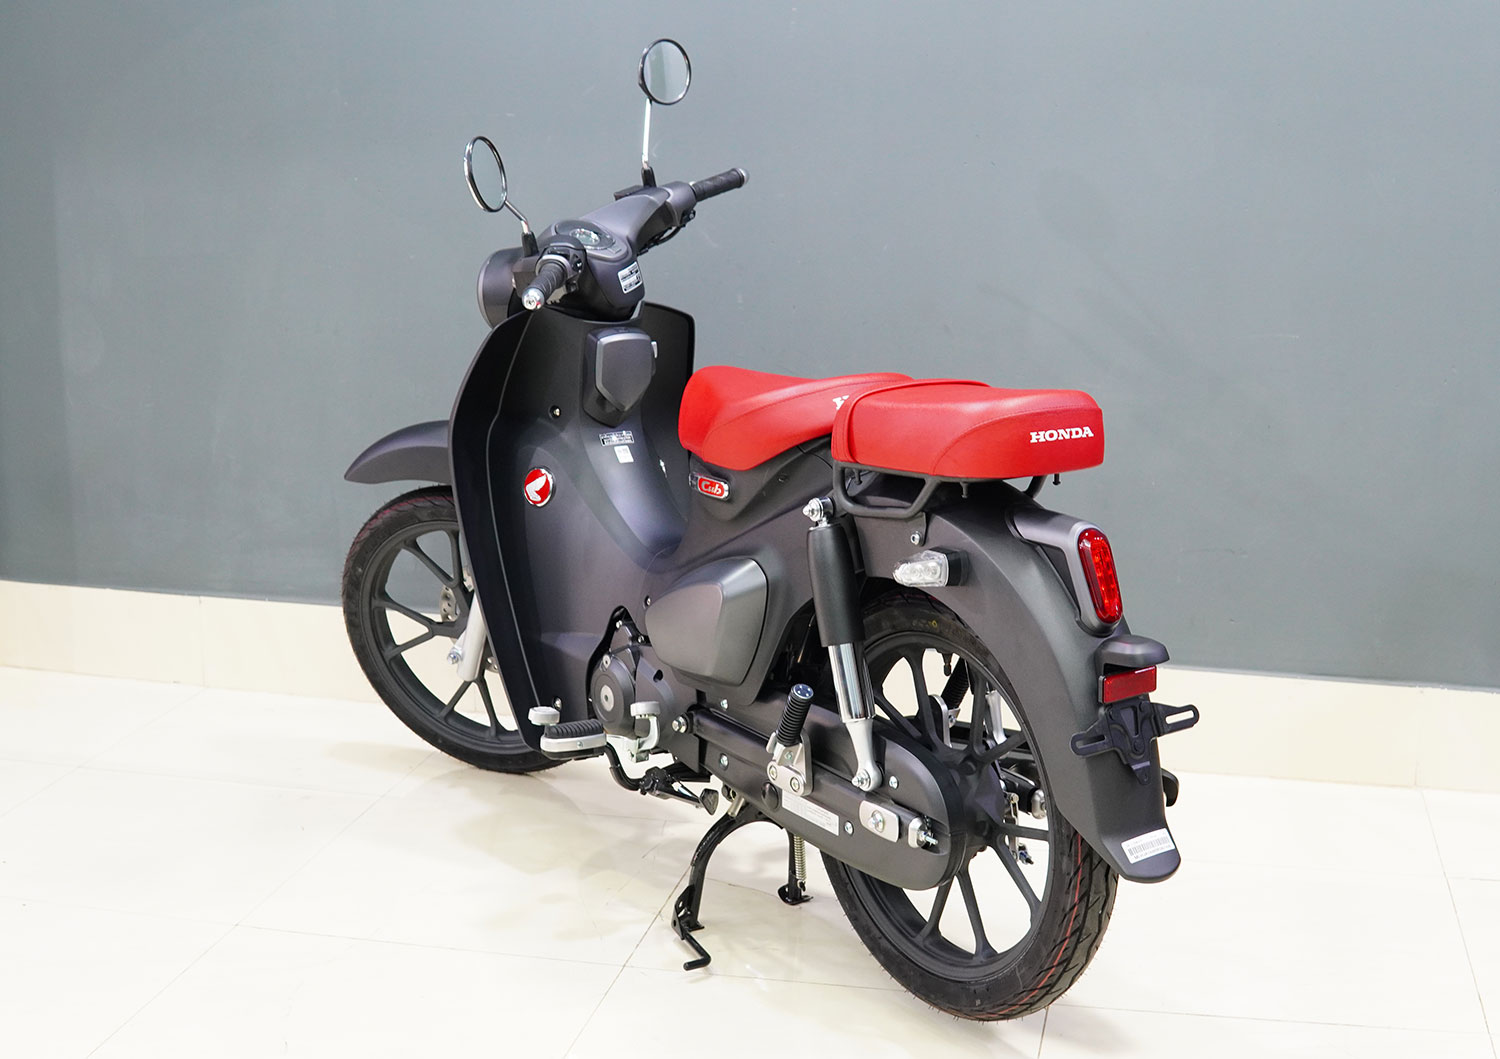 Honda CT125 nhập khẩu nguyên chiếc từ Thái Lan có giá 198 triệu đồng   AutoFun